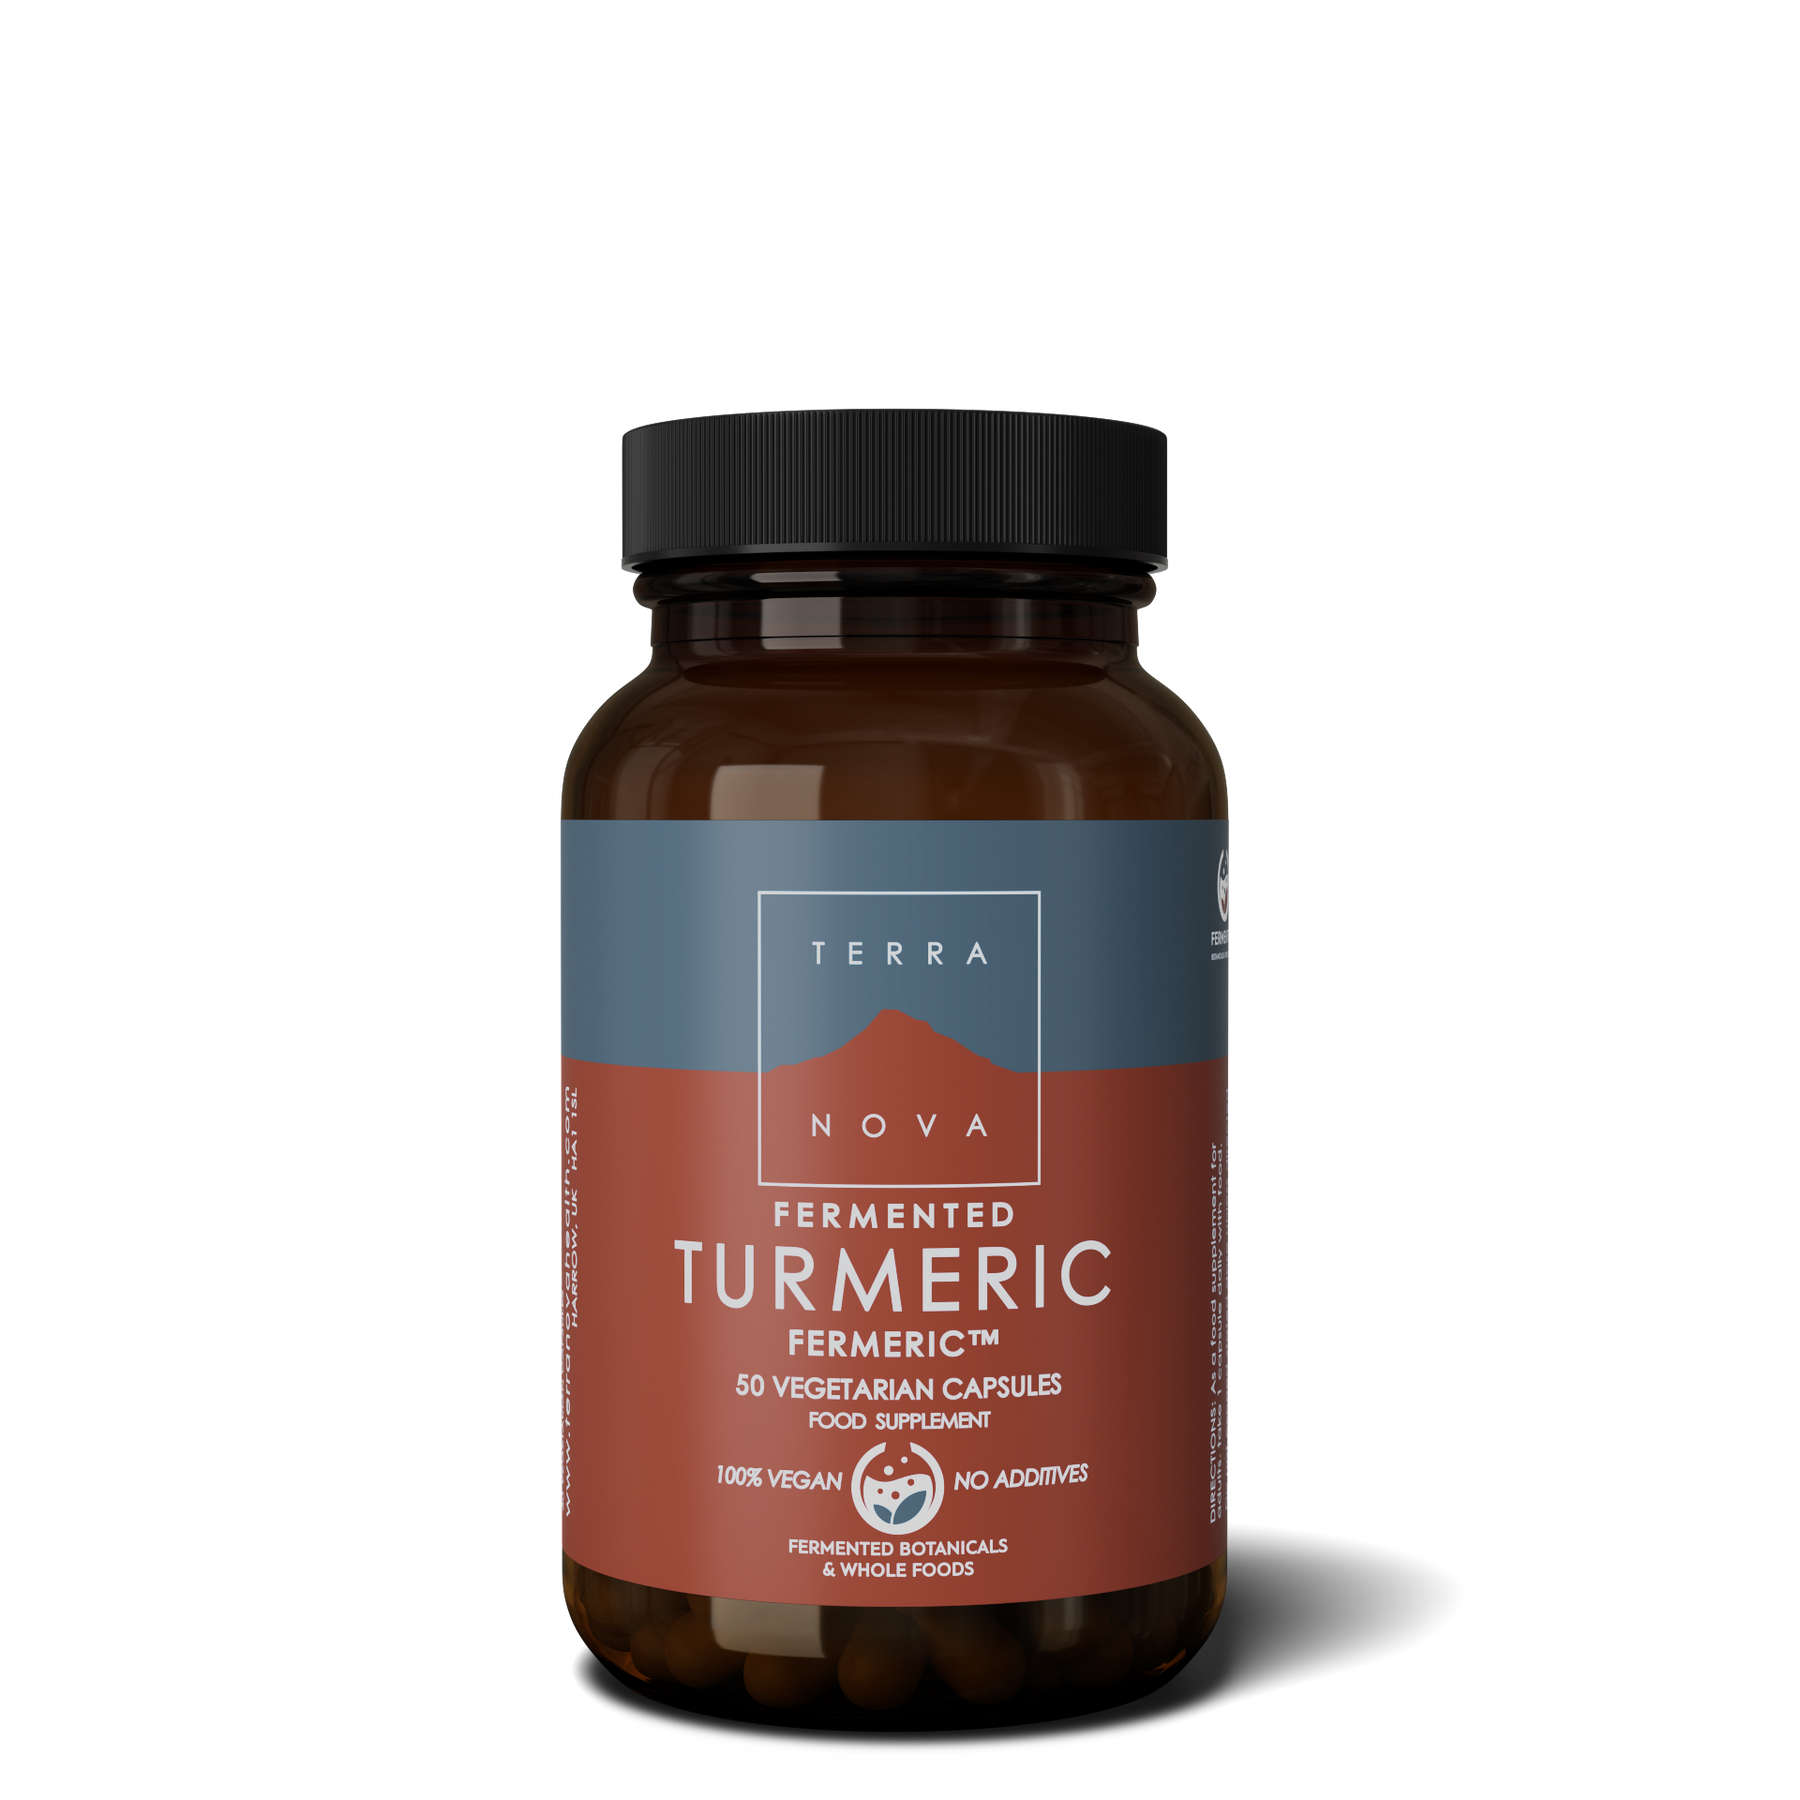 Terranova Fermented Turmeric - Fermentoitu kurkuma 50 kaps.